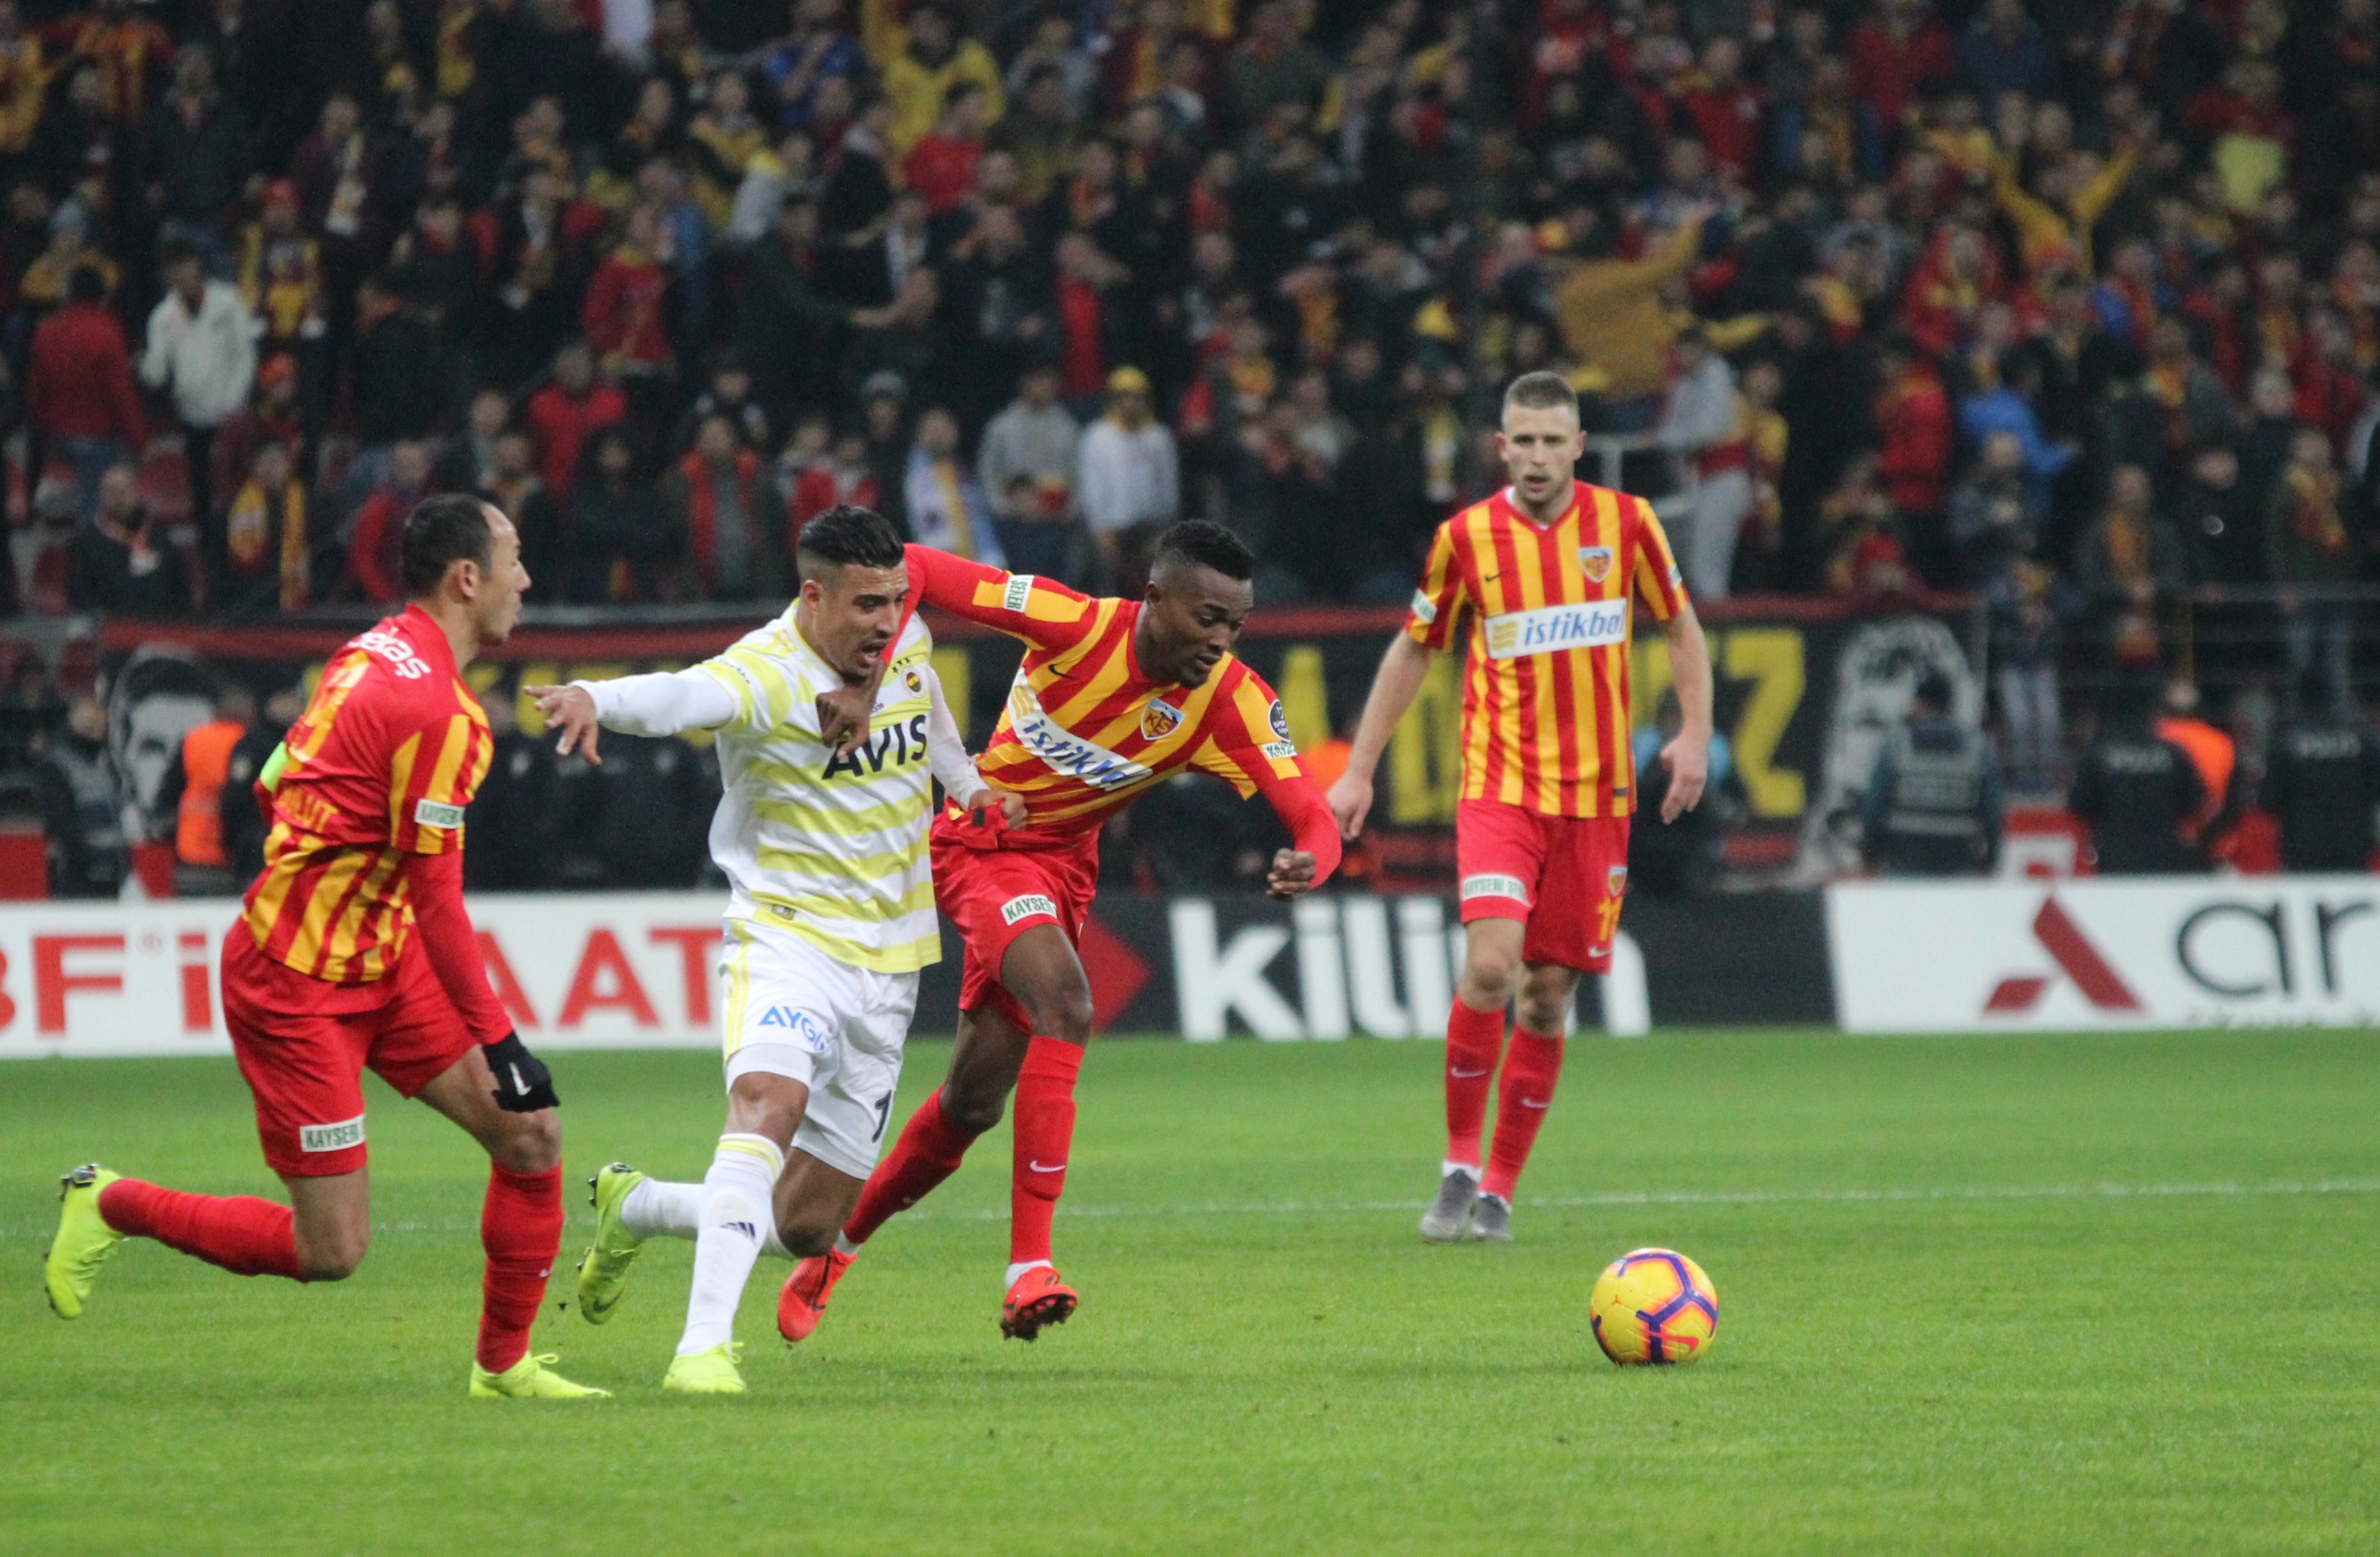 Analiz | Kayserispor 1-0 Fenerbahçe